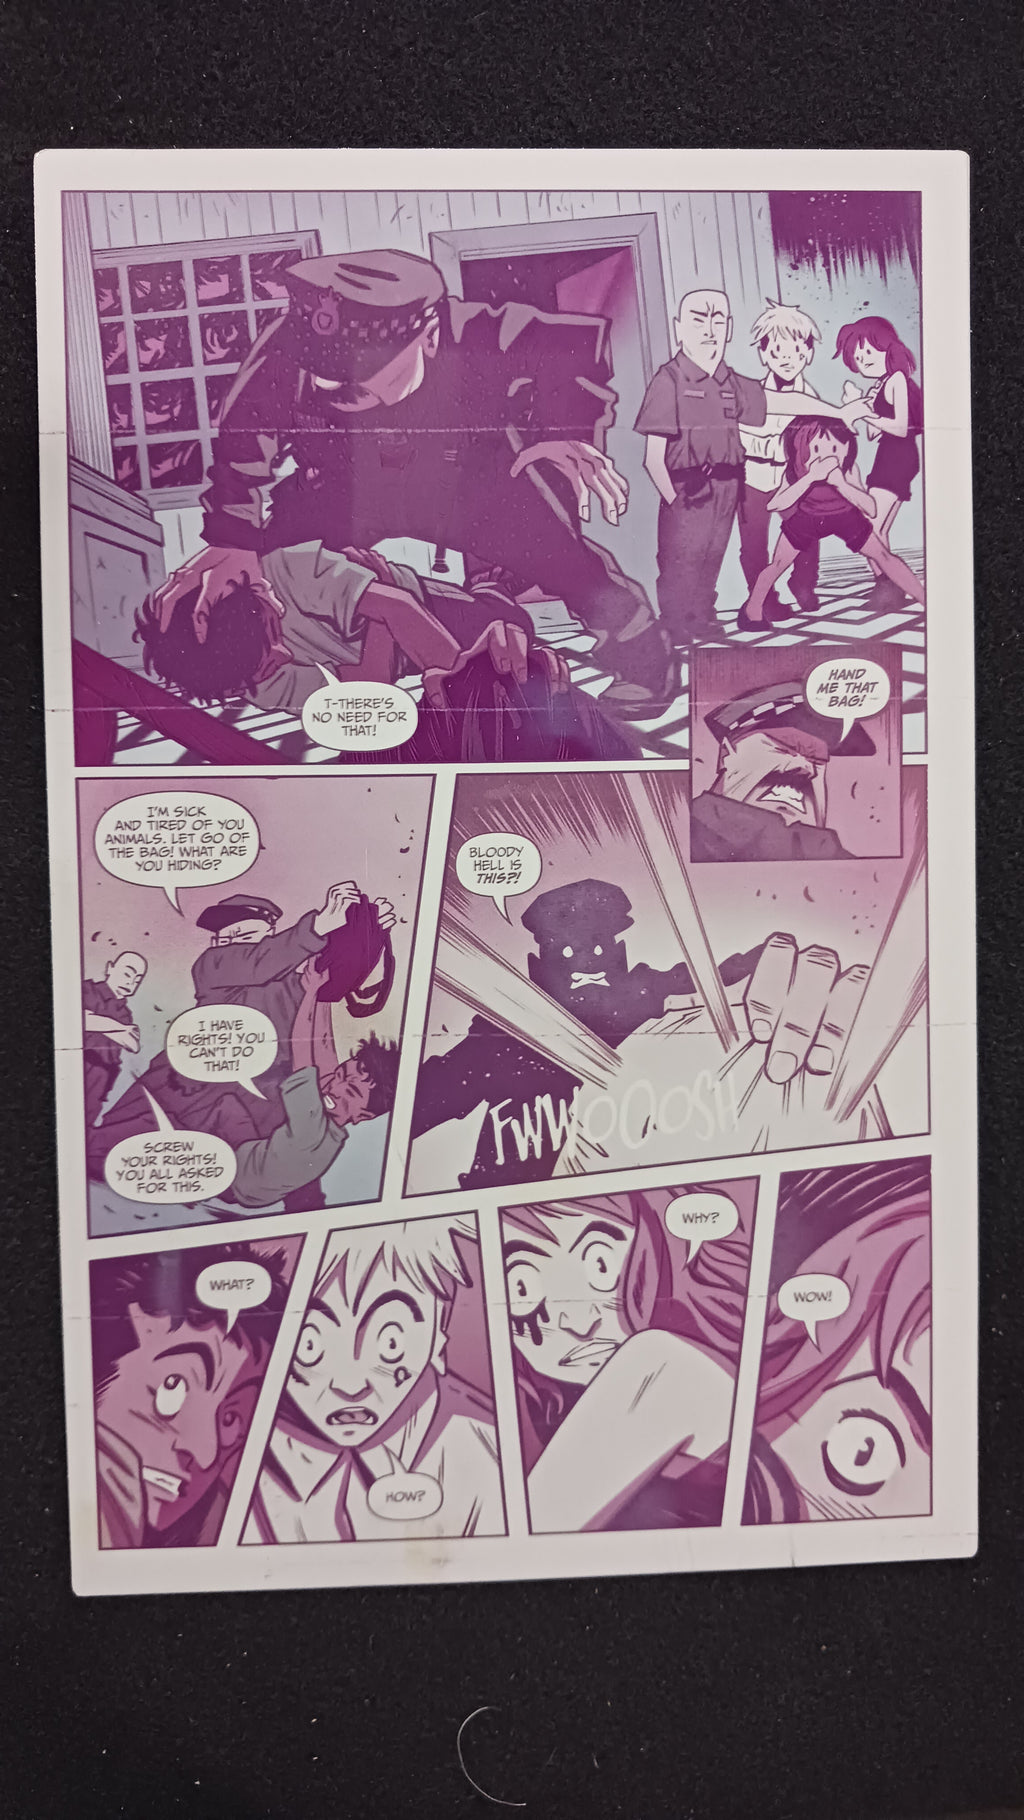 Omega Gang #1 - Page 15 - PRESSWORKS - Comic Art - Printer Plate - Magenta